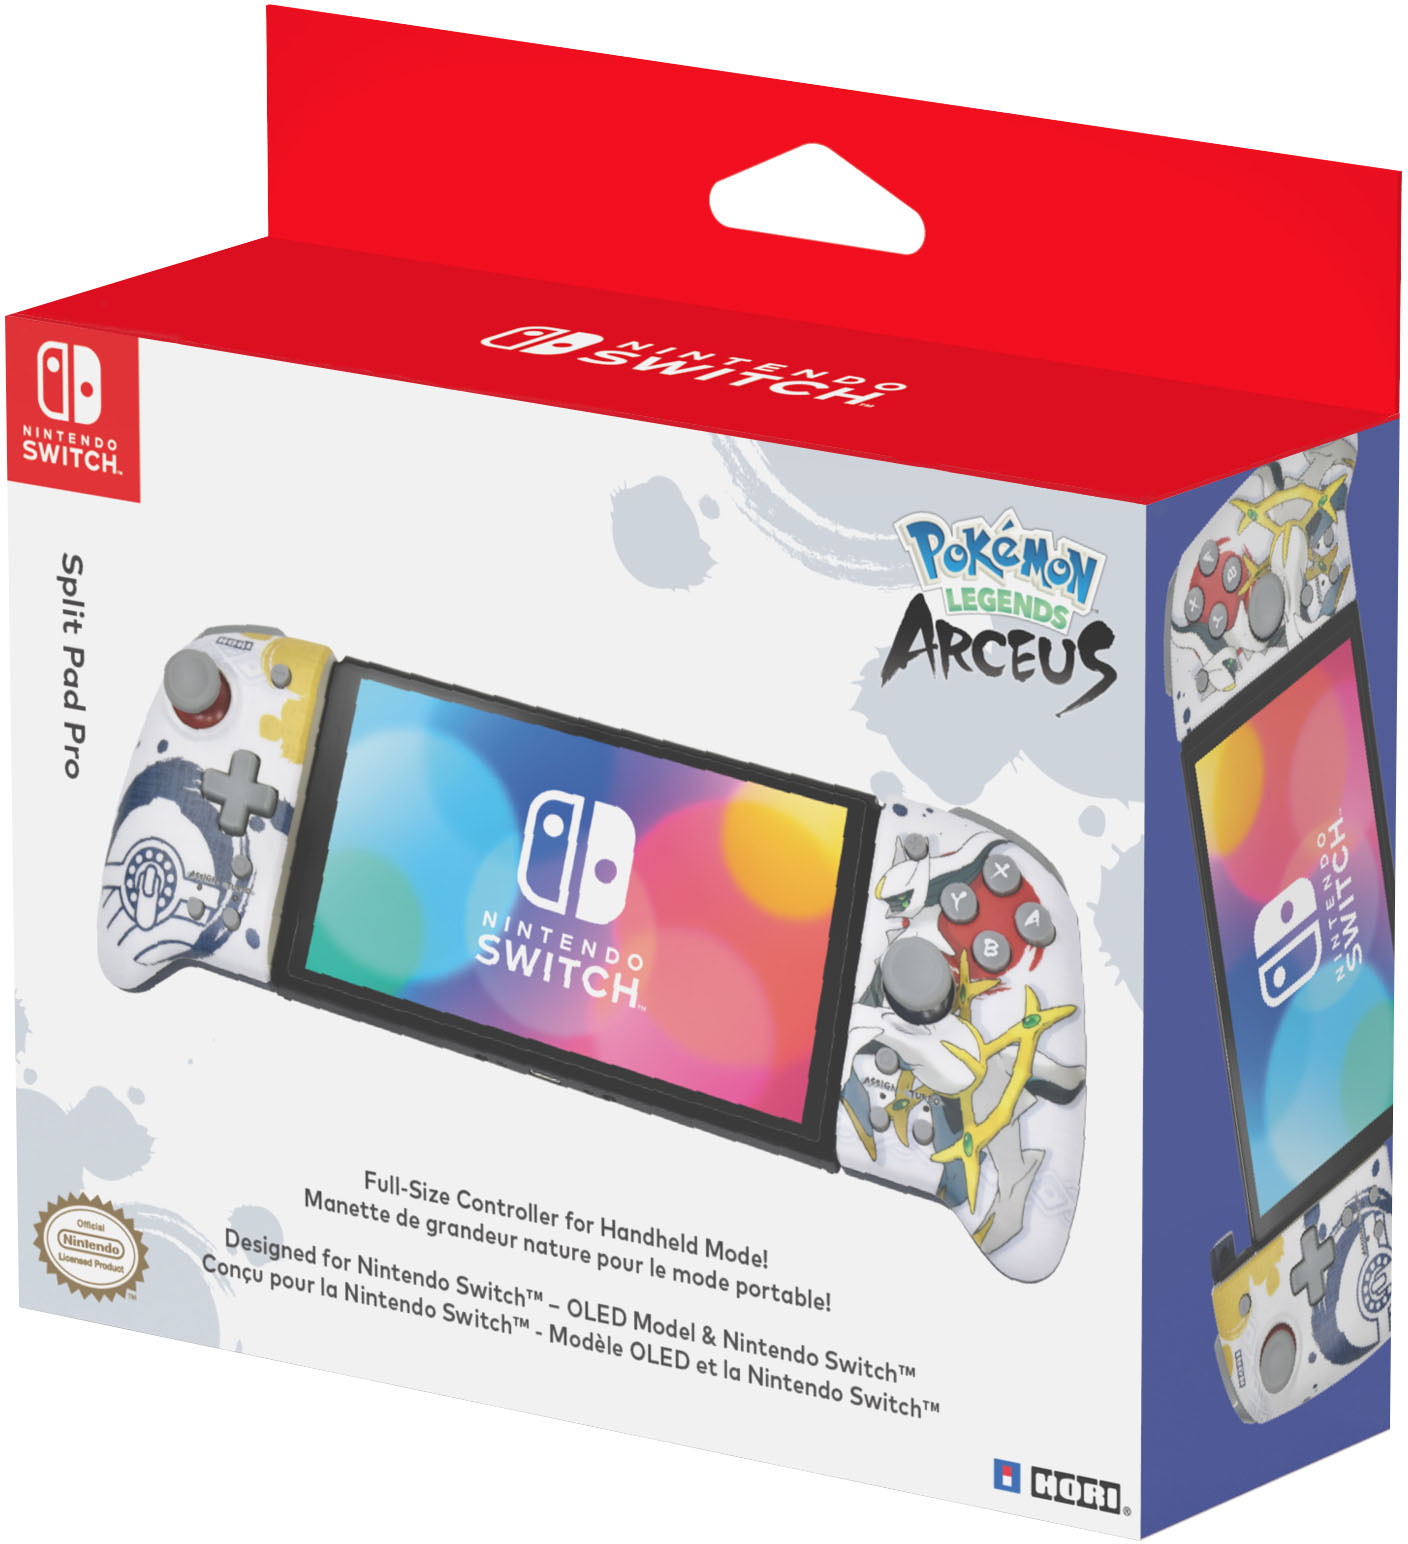 Hori Split Pad Pro for Nintendo Switch Charizard NSW-413U - Best Buy